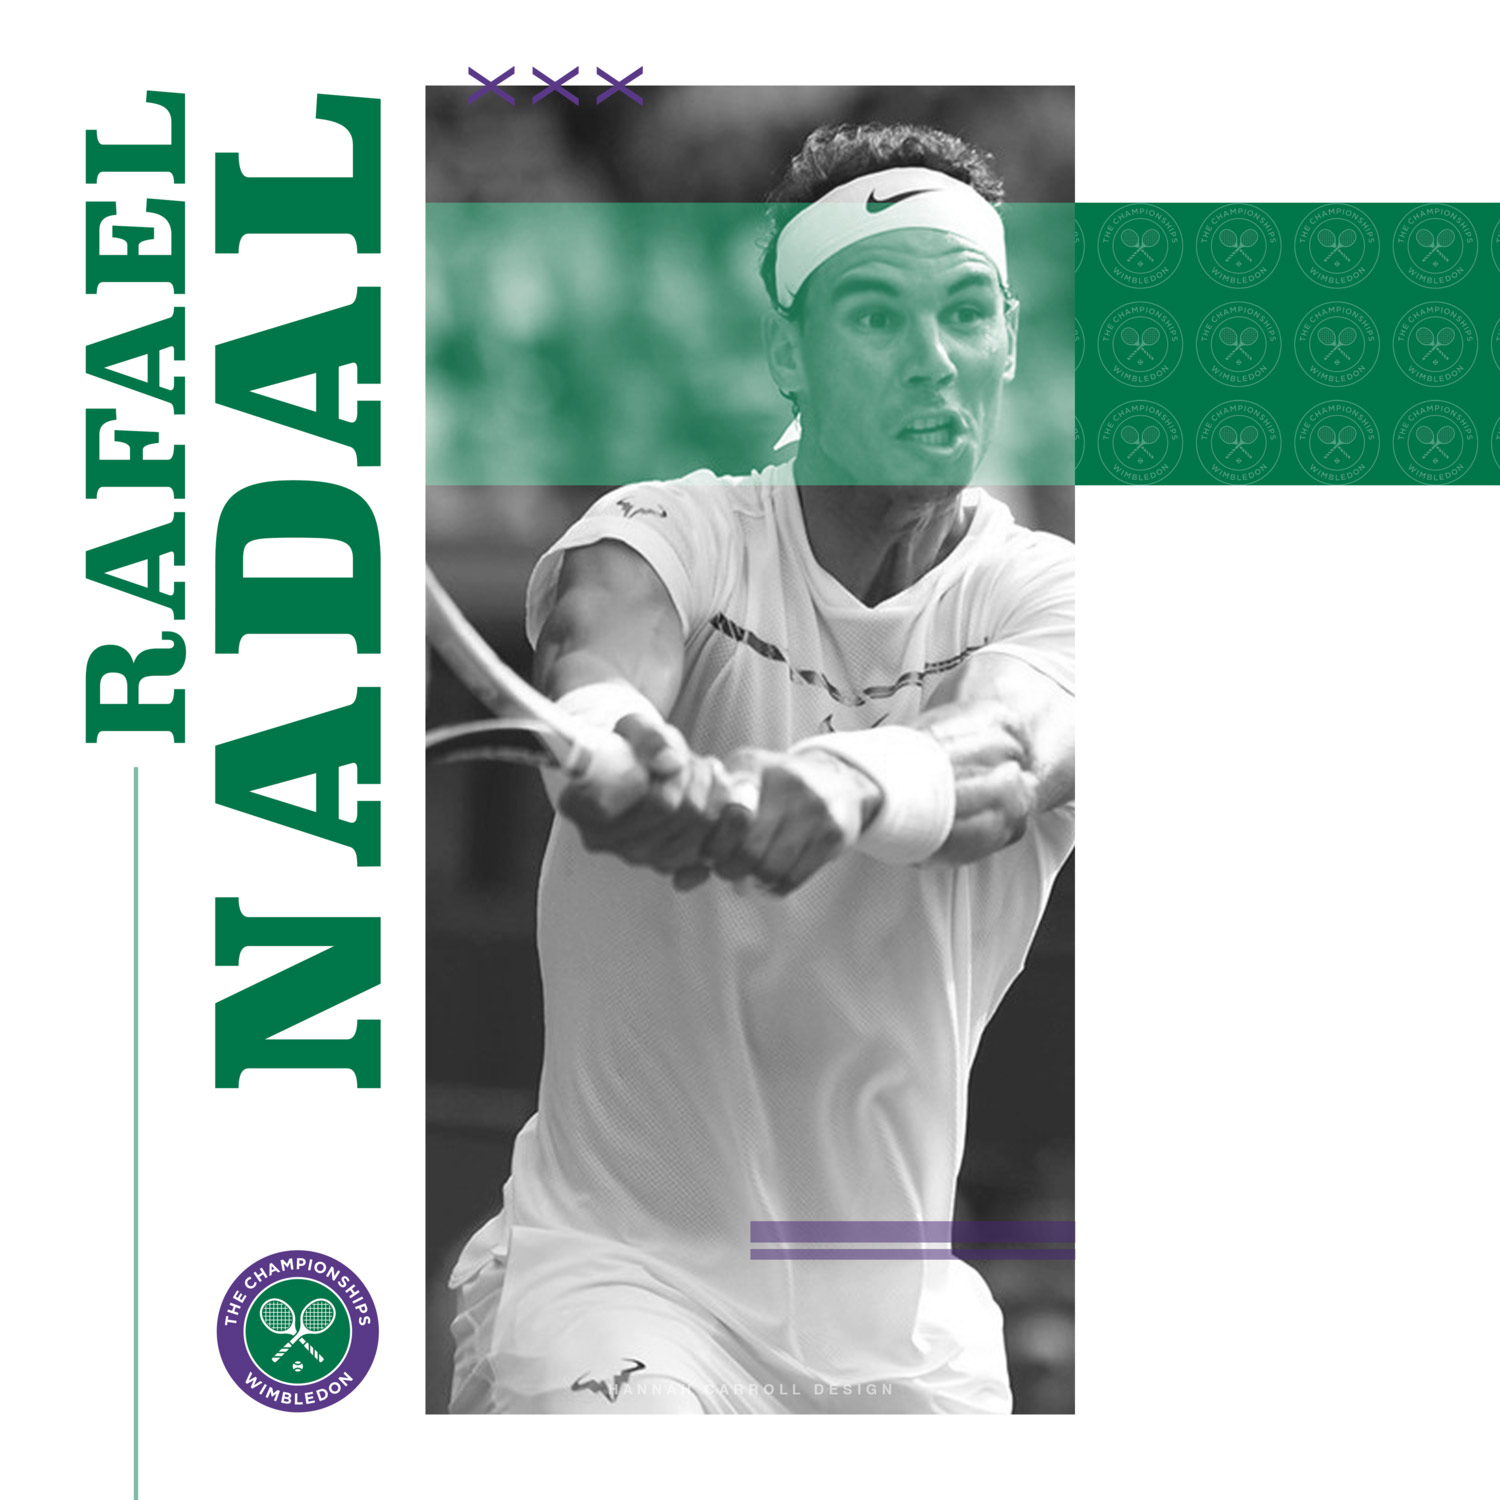 Siêu kinh điển Federer - Nadal: 10 năm trận đấu thiên niên kỷ (Chung kết Wimbledon 2008) - 14